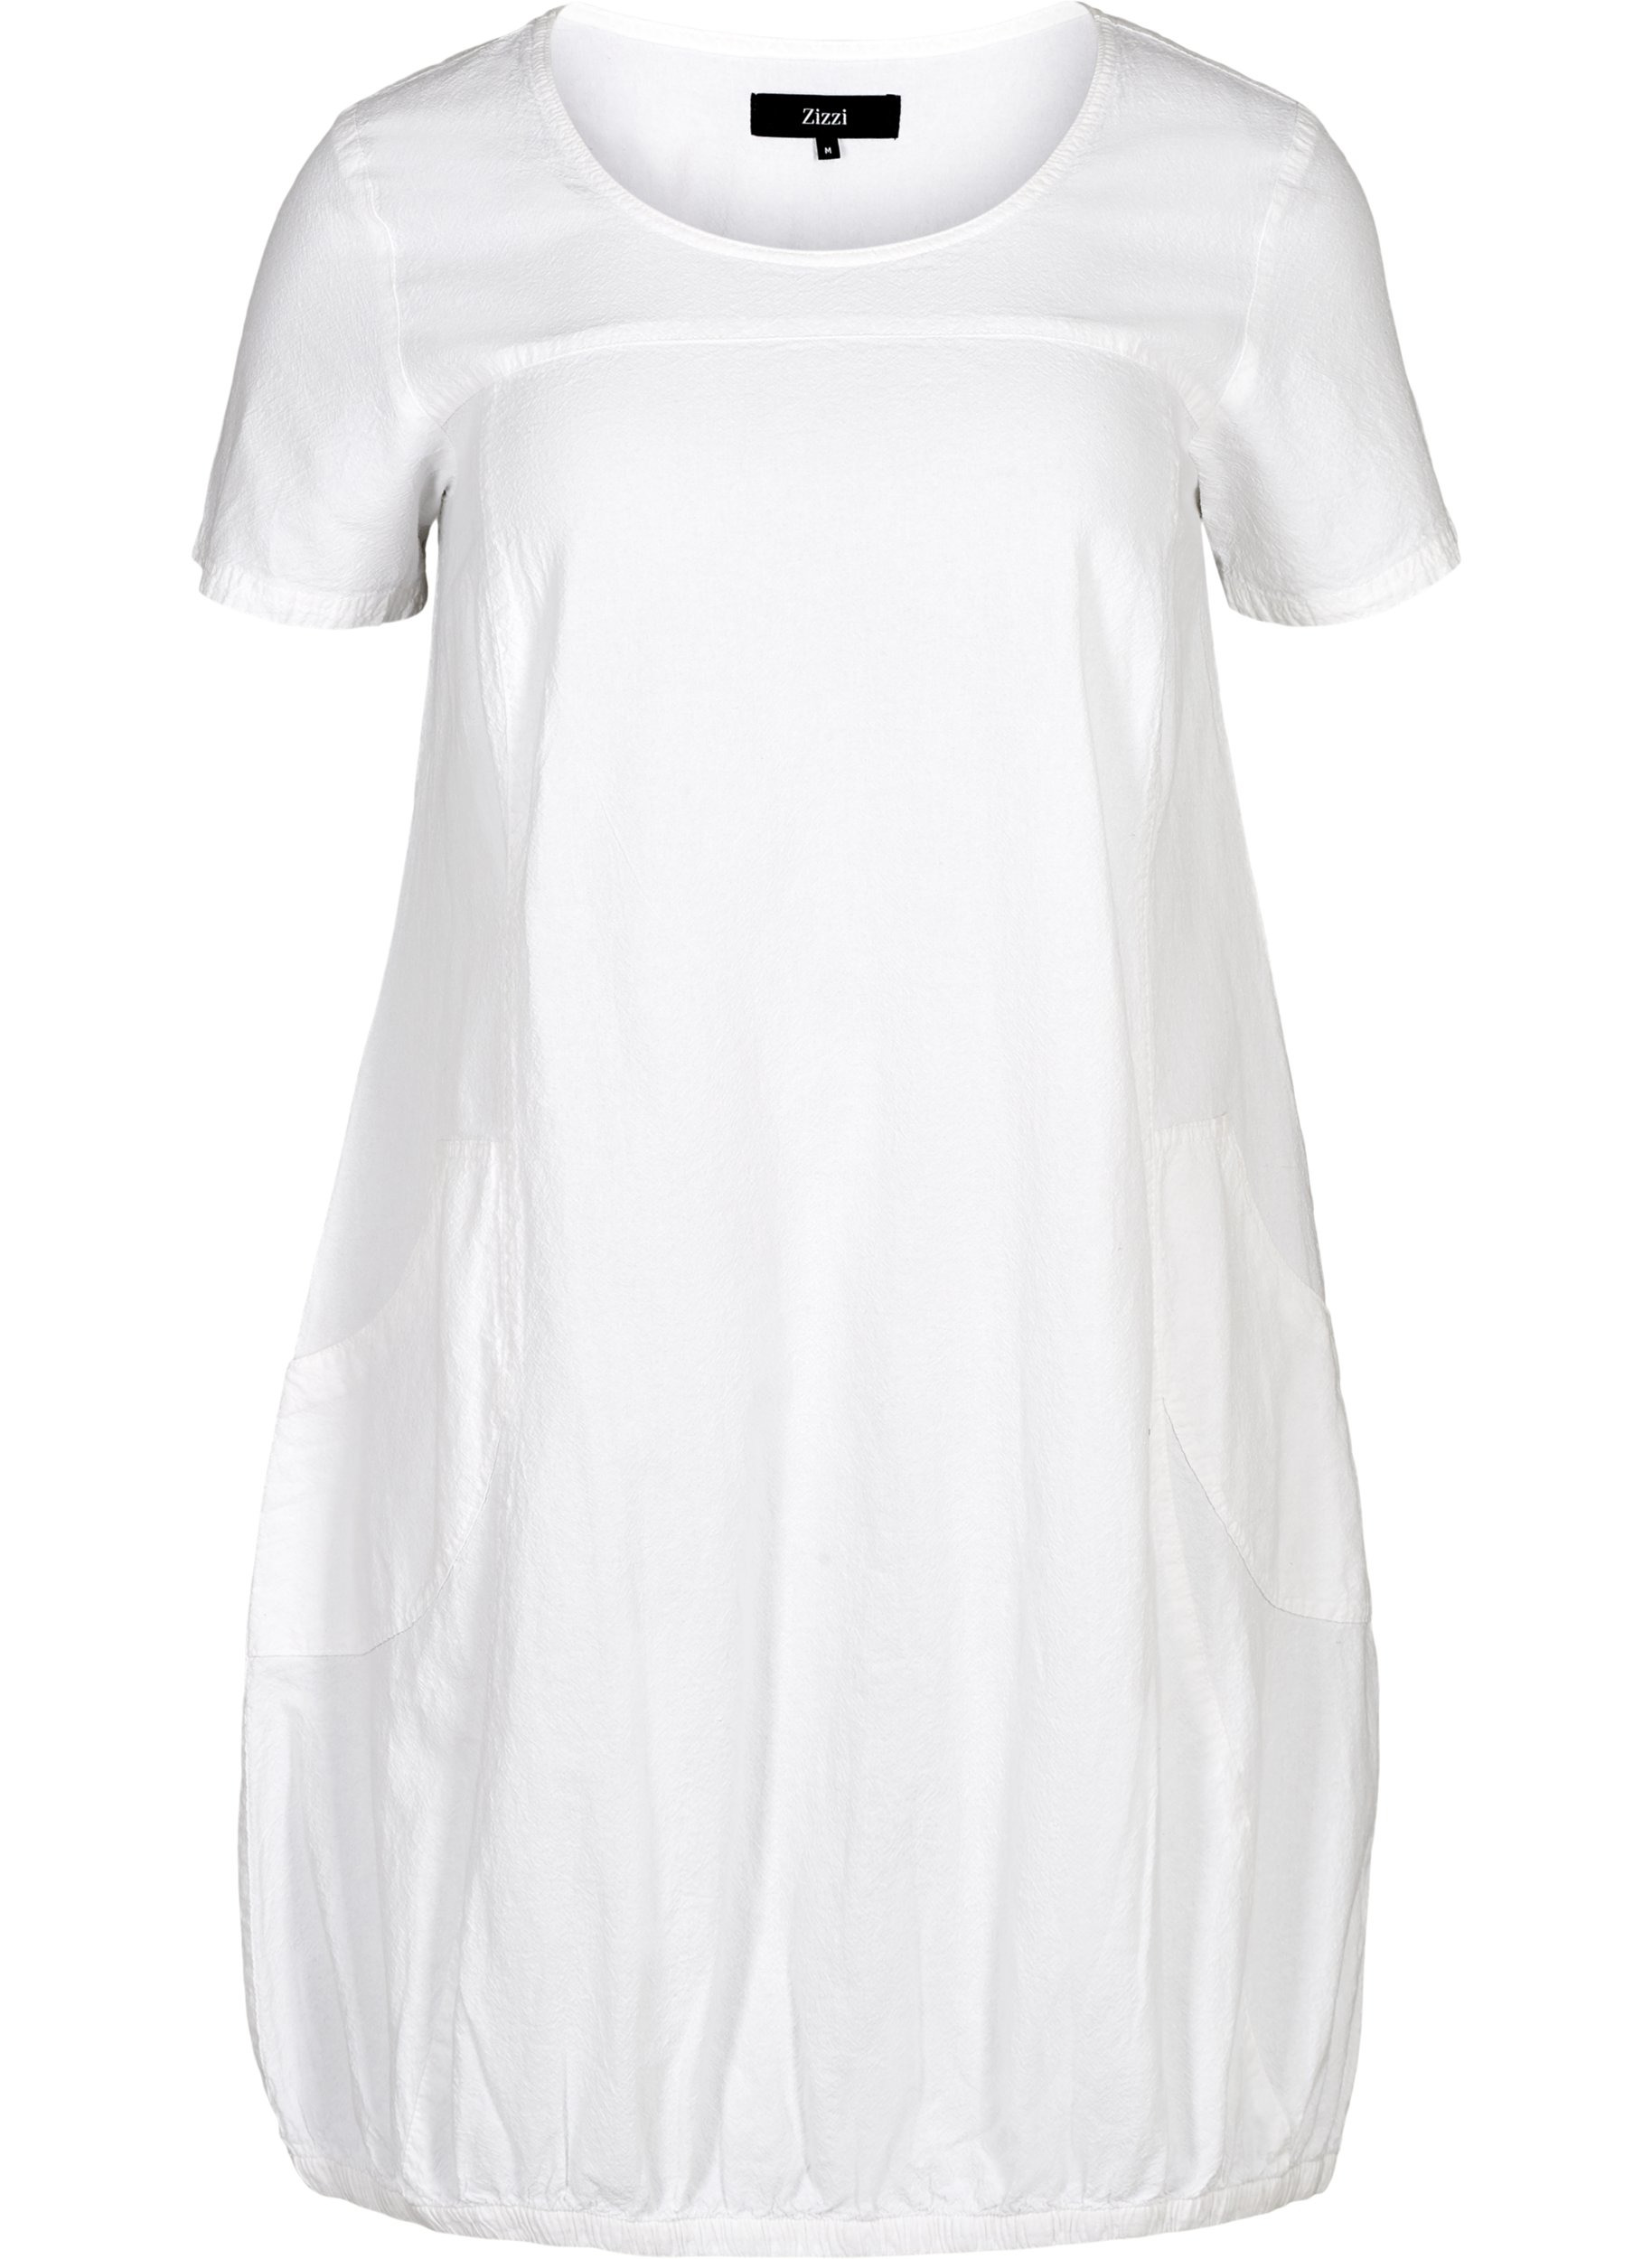 Kortärmad klänning i bomull, White